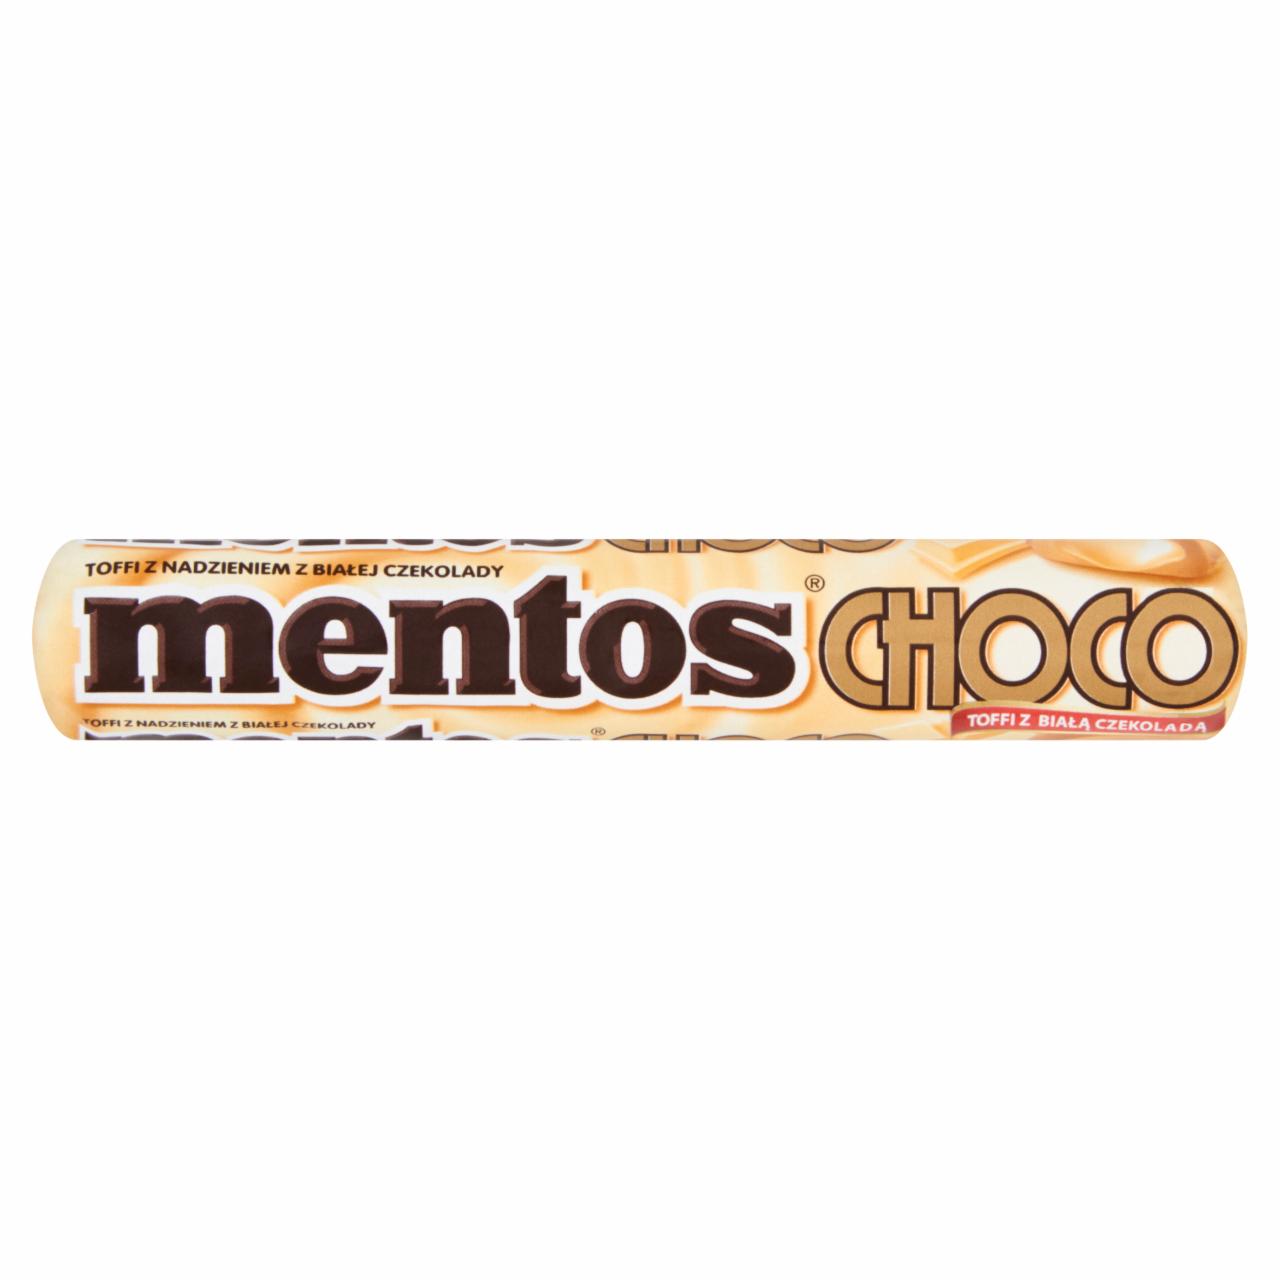 Zdjęcia - Mentos Choco Toffi z nadzieniem z białej czekolady 38 g